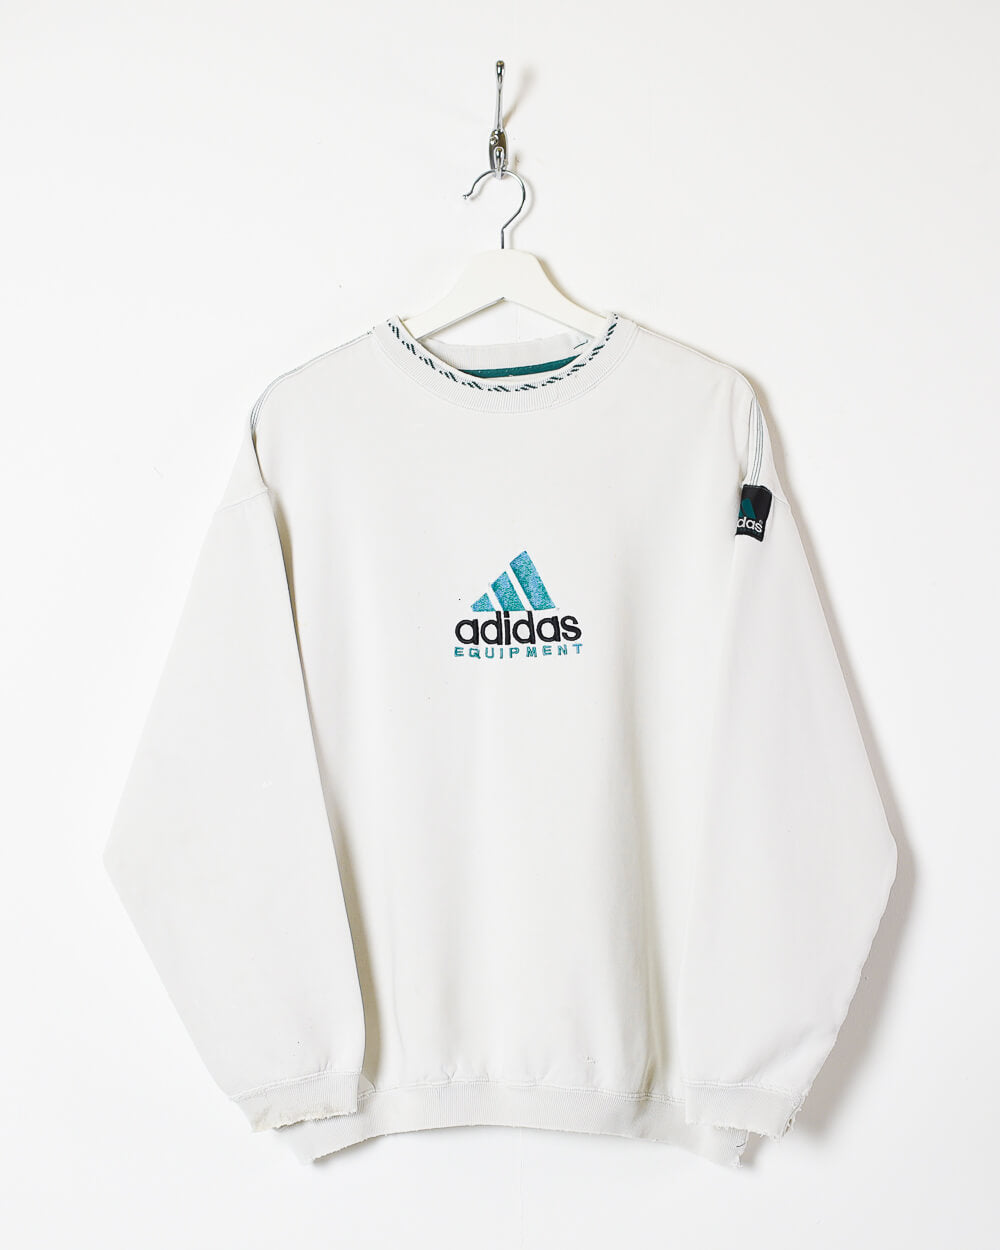 White Adidas Equipment Sweatshirt - Medium